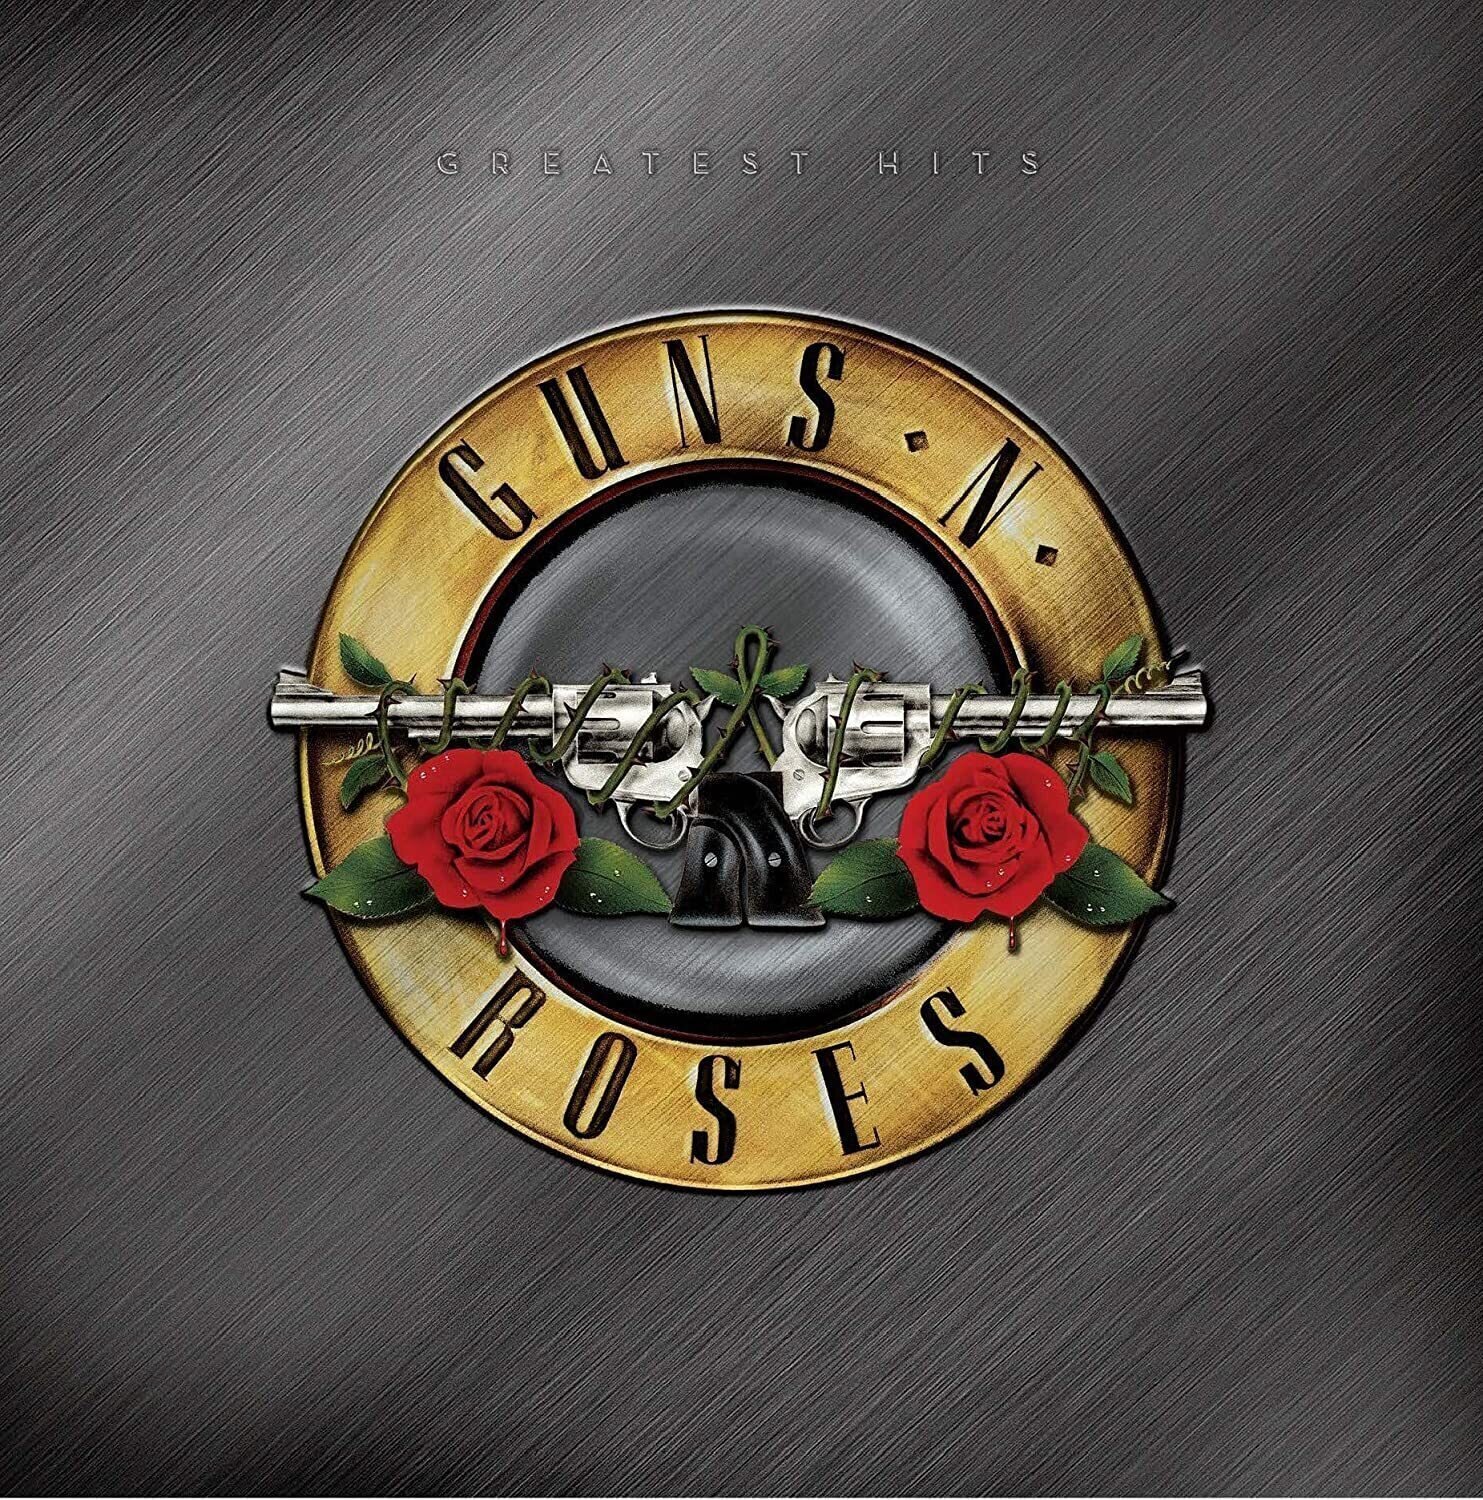 Guns N' Roses - Greatest Hits (2 LP) (180g) Guns N' Roses